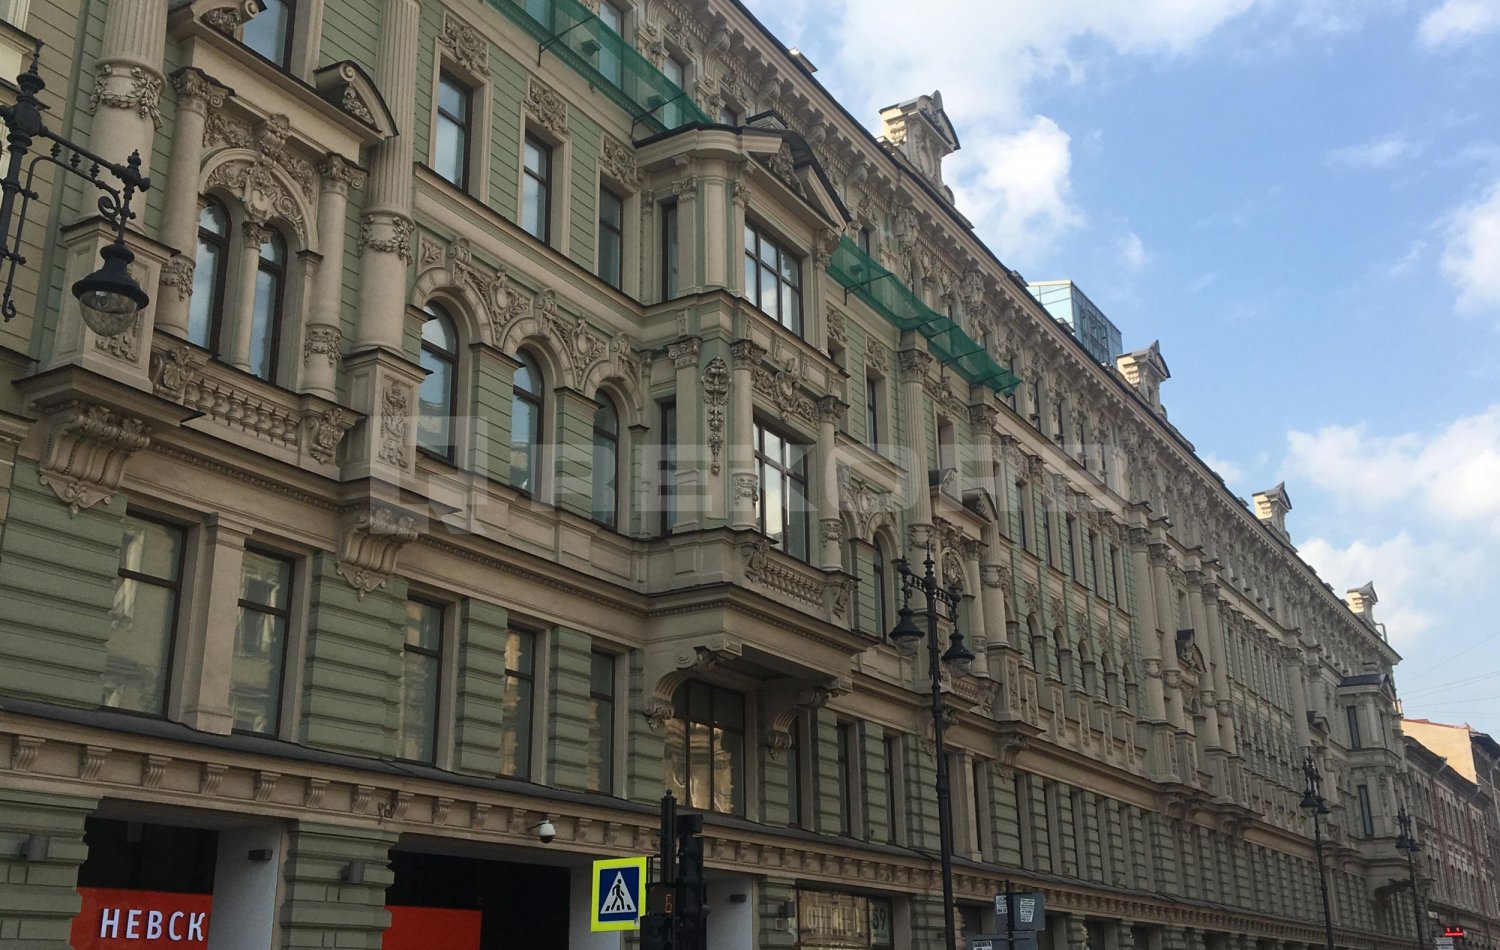 Продажа офисов в Санкт-Петербурге без комиссии: все предложения на одном сайте